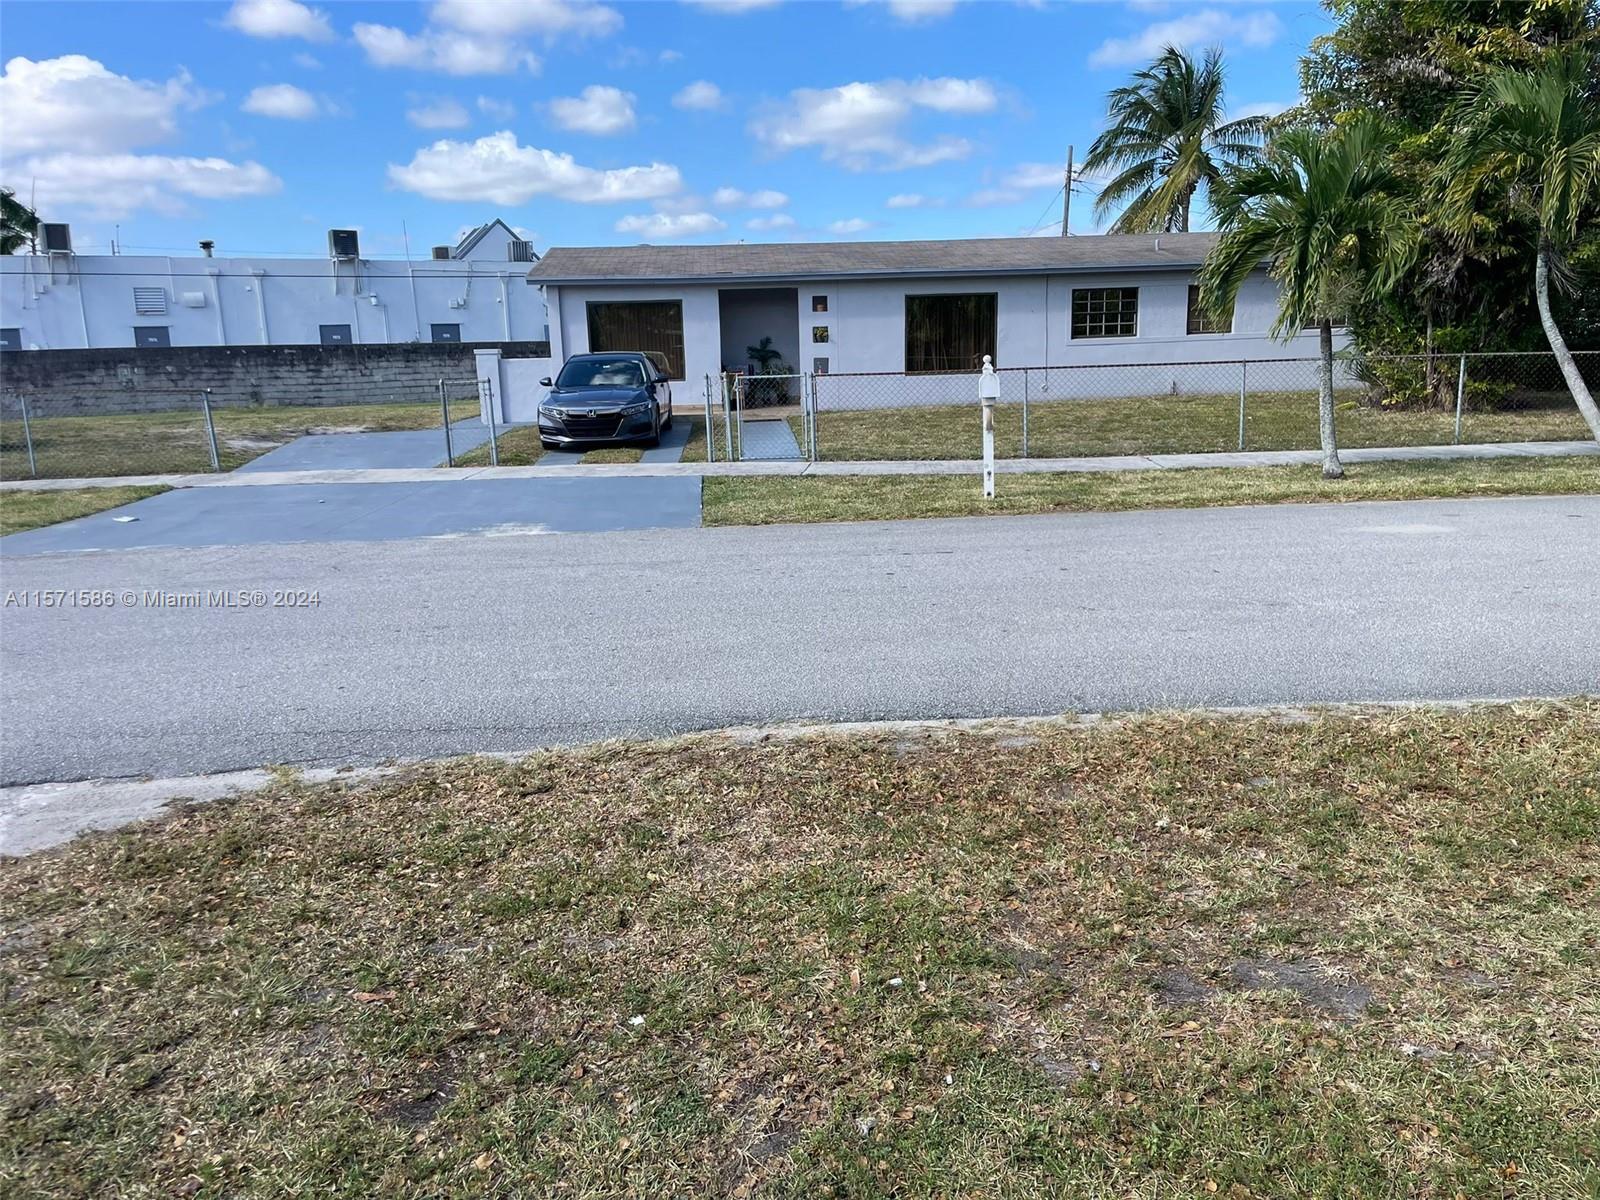 View Miami, FL 33144 house